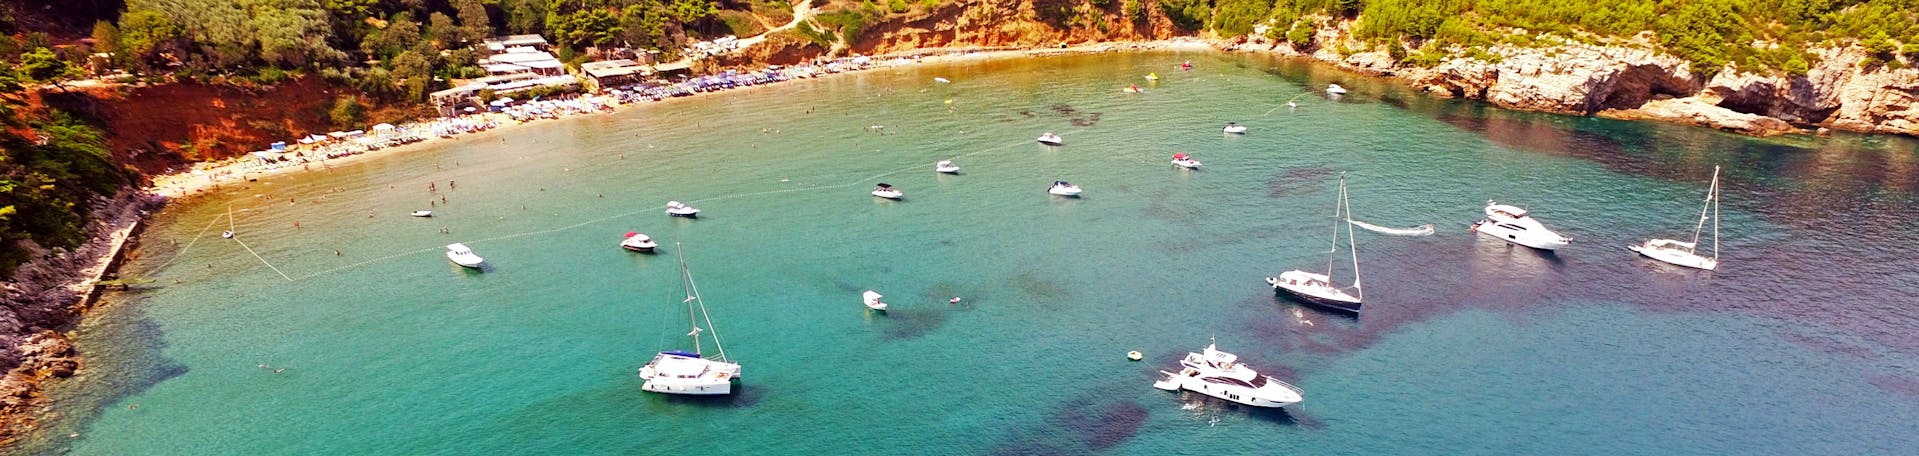 Vista della baia durante il tour privato in barca di un'intera giornata da Dubrovnik alle Isole Elafiti organizzato da Snooky Tours Dubrovnik.